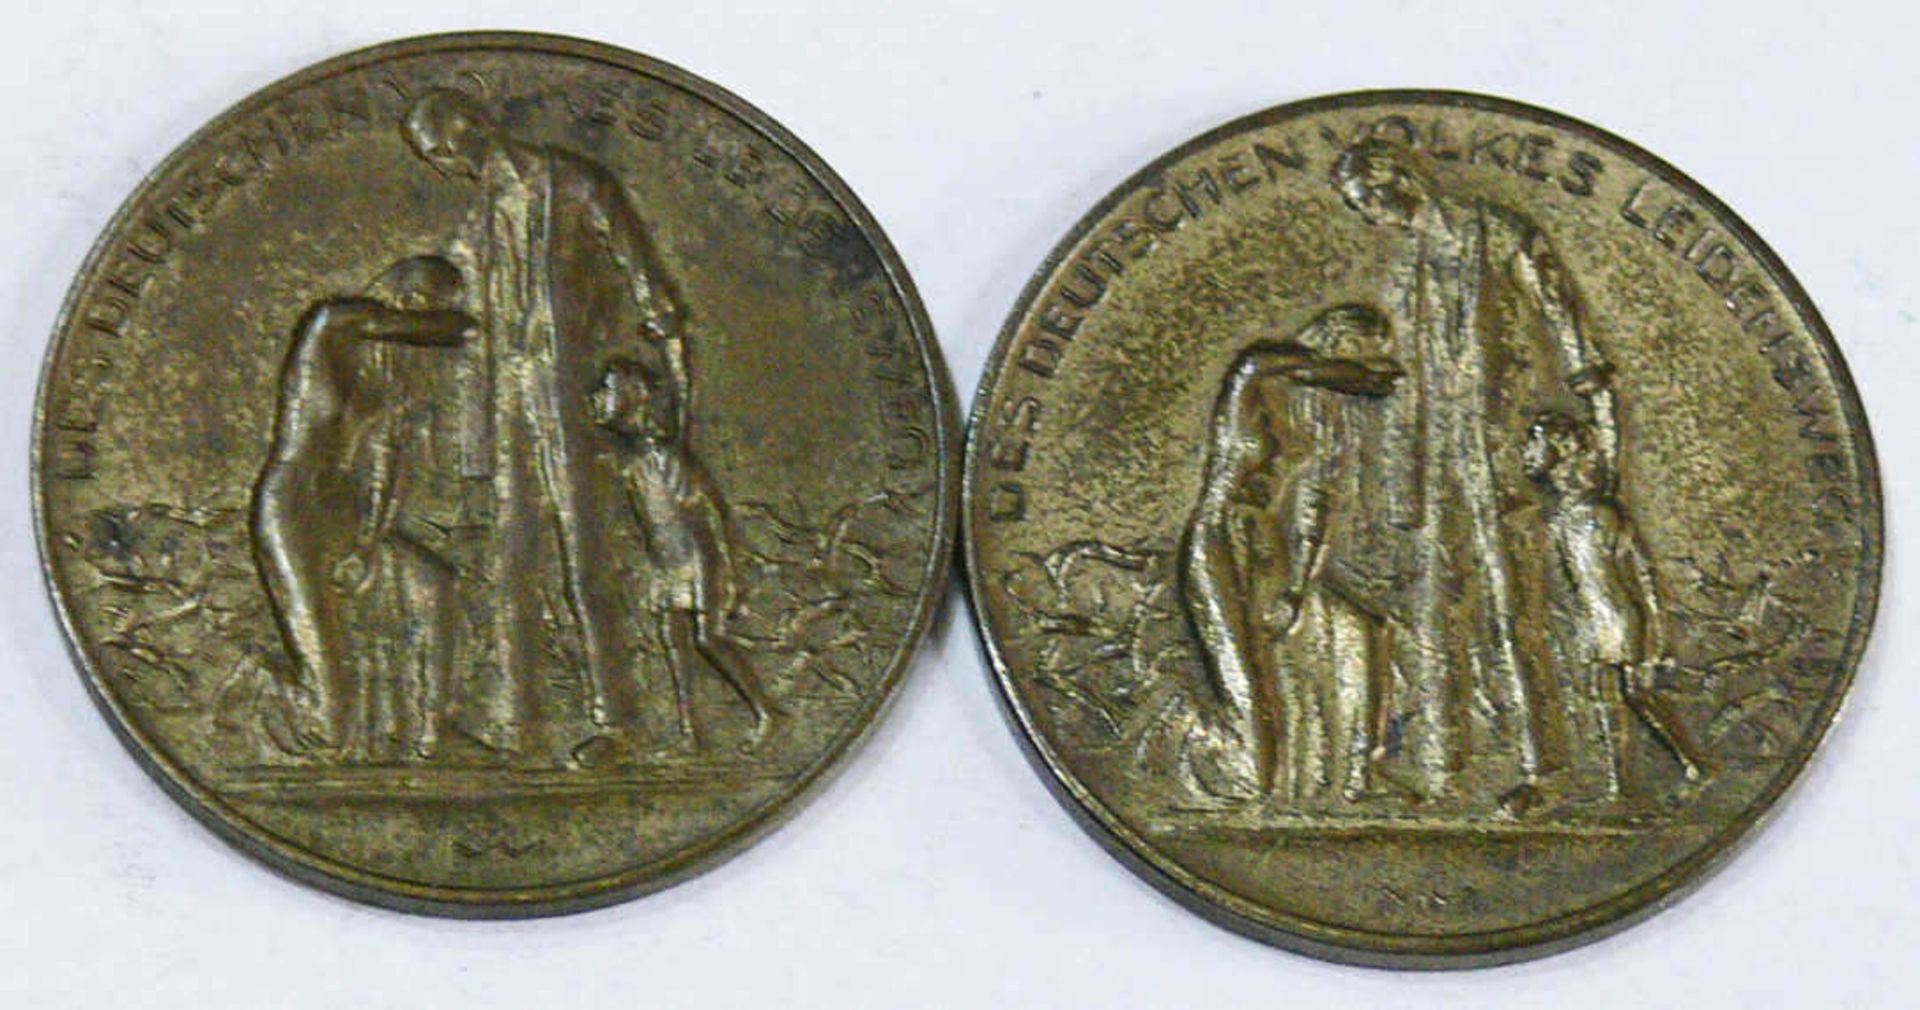 Weimarer Republik, zwei Medaillen "Des Deutschen Volkes Leidensweg". Weimar Republic, two medals